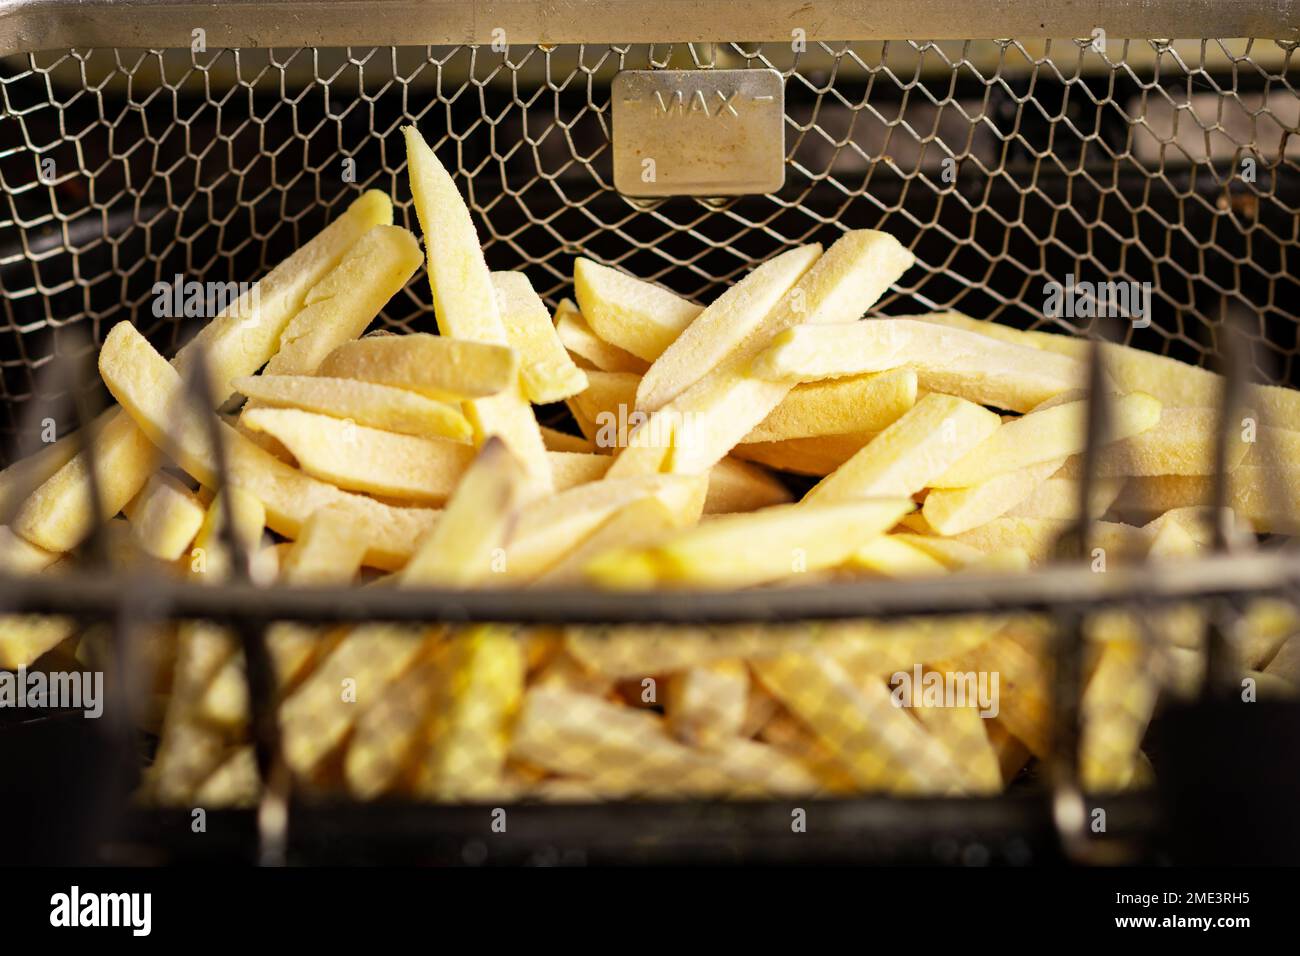 Gefrorene pommes frites in einem Friteusskorb. Halbfertigerzeugnis aus gefrorenen Kartoffeln. Zum Frittieren vorbereiten. Stockfoto